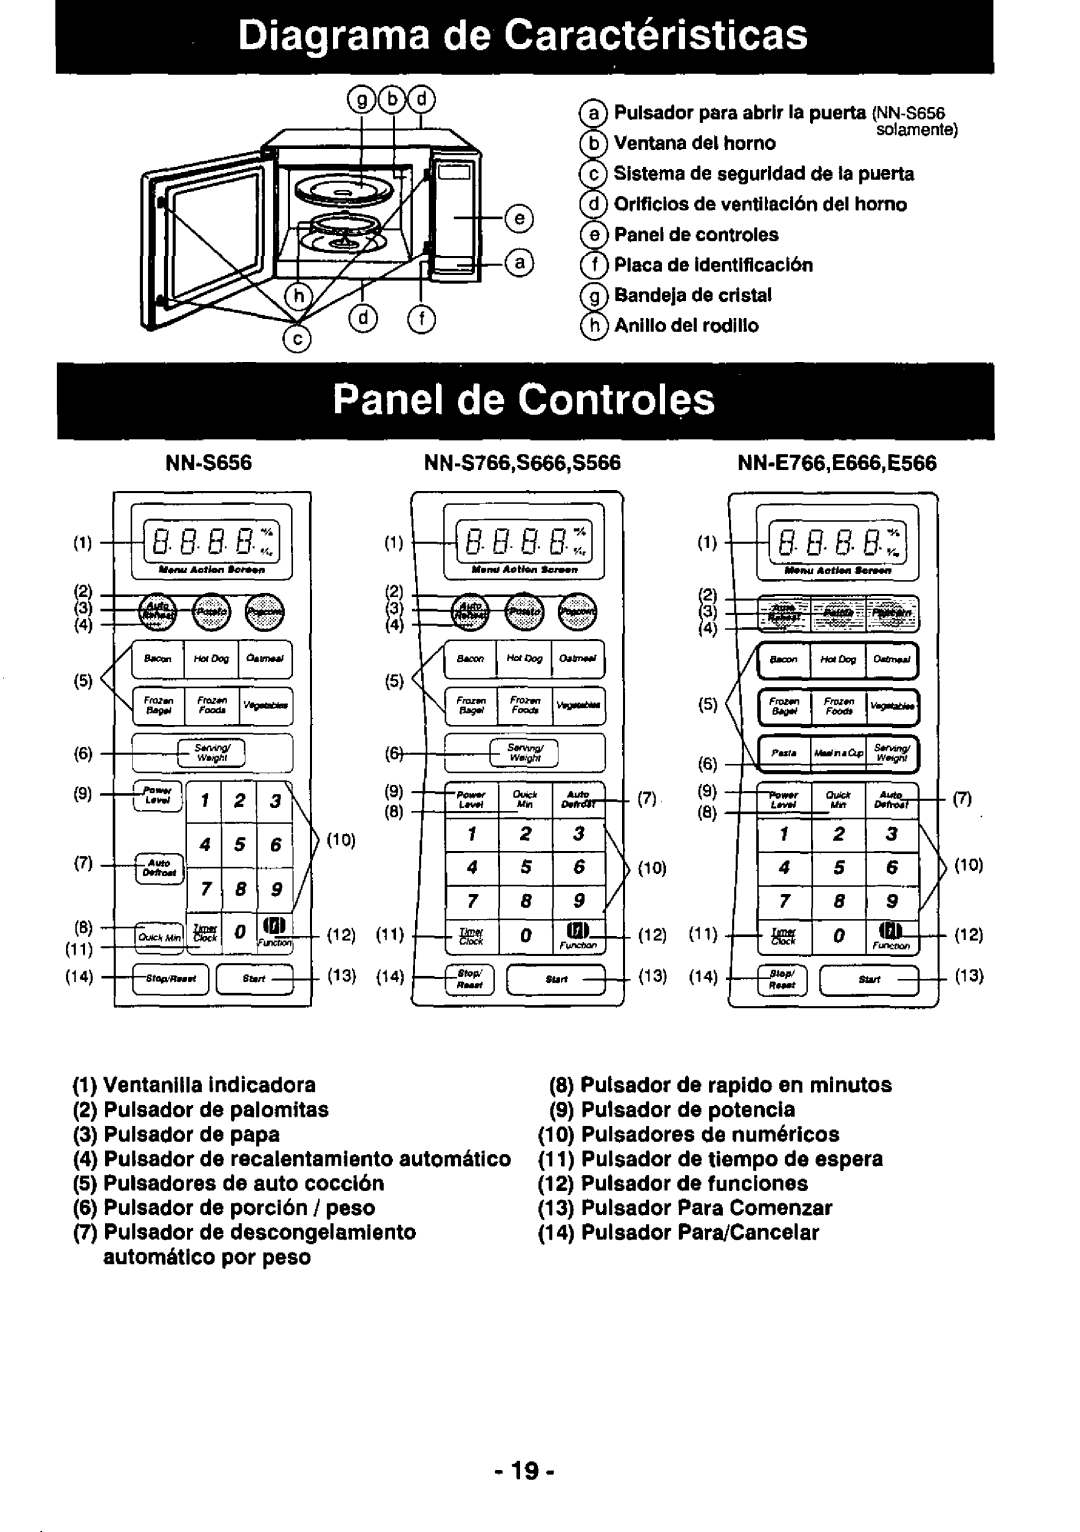 Panasonic NNS656, NN-E666, NN-E566, NN-E776, NNS666, NNS566 manual 